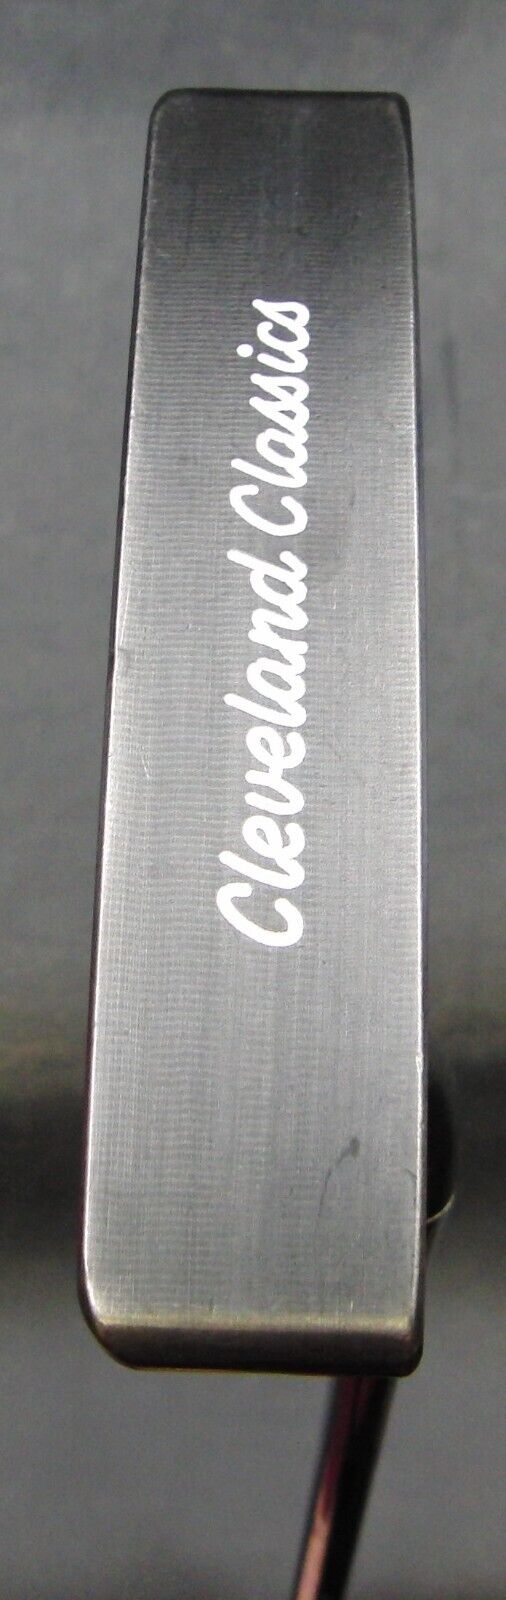 Cleveland Classics KG 12 Milled Putter 88cm Length Steel Shaft Cleveland Grip